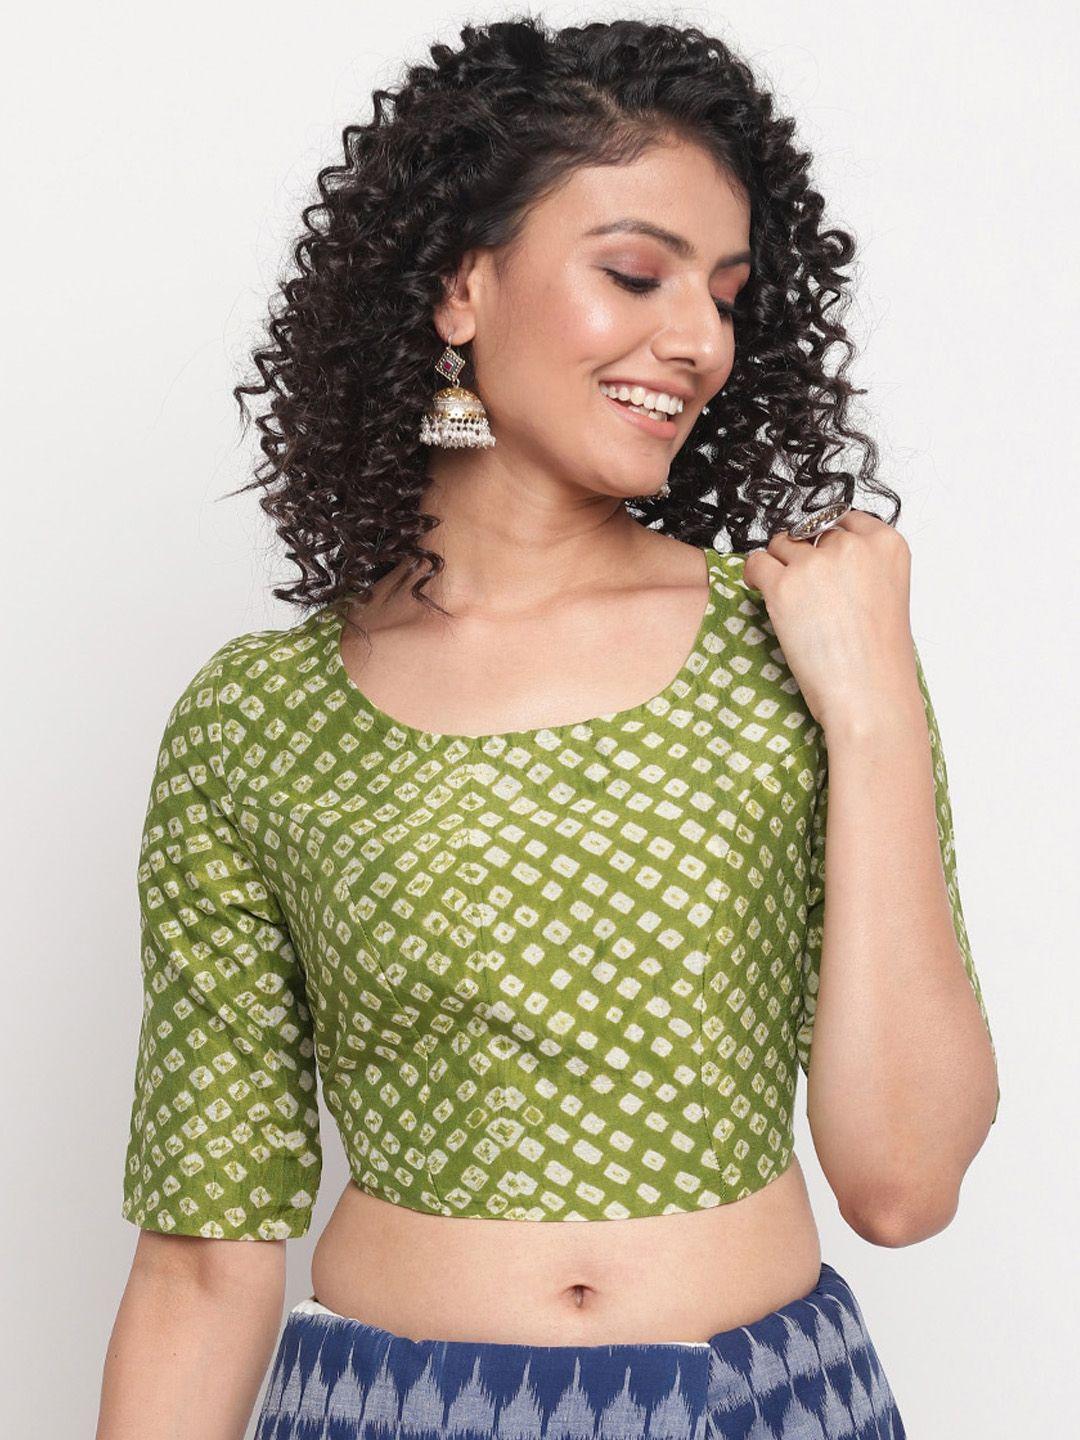 fabindia-green-&-white-bandhani-printed-cotton-saree-blouse